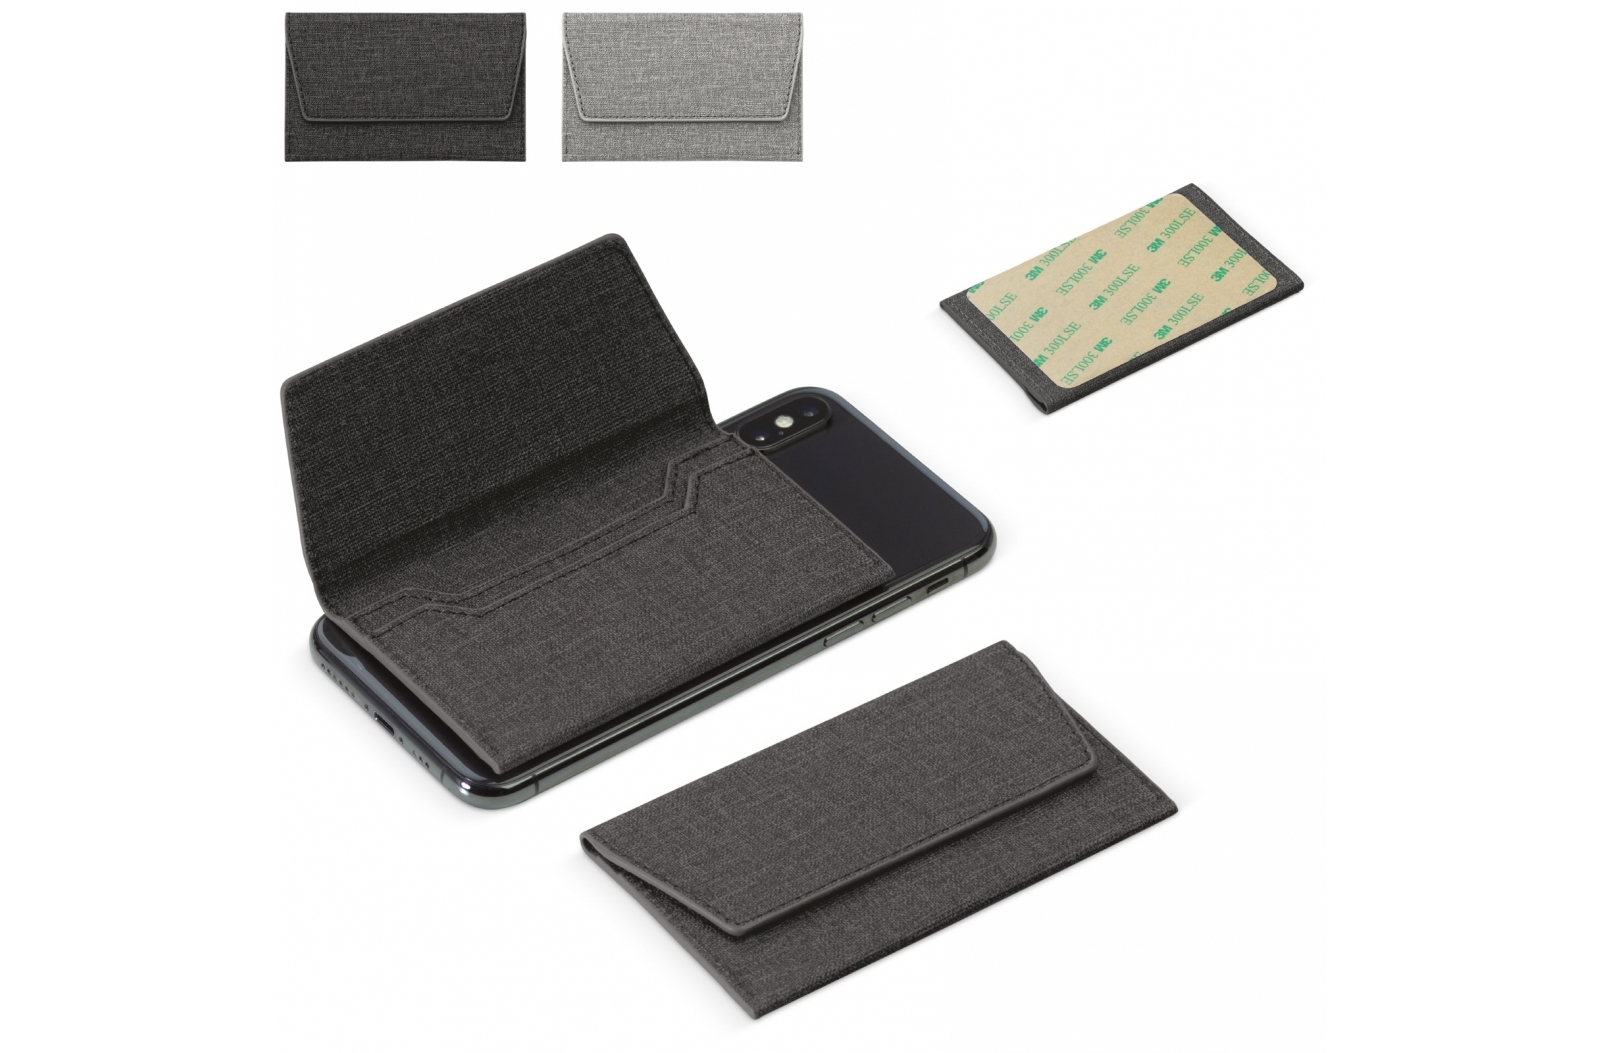 Portes-cartes bancaire RFID pour smartphone